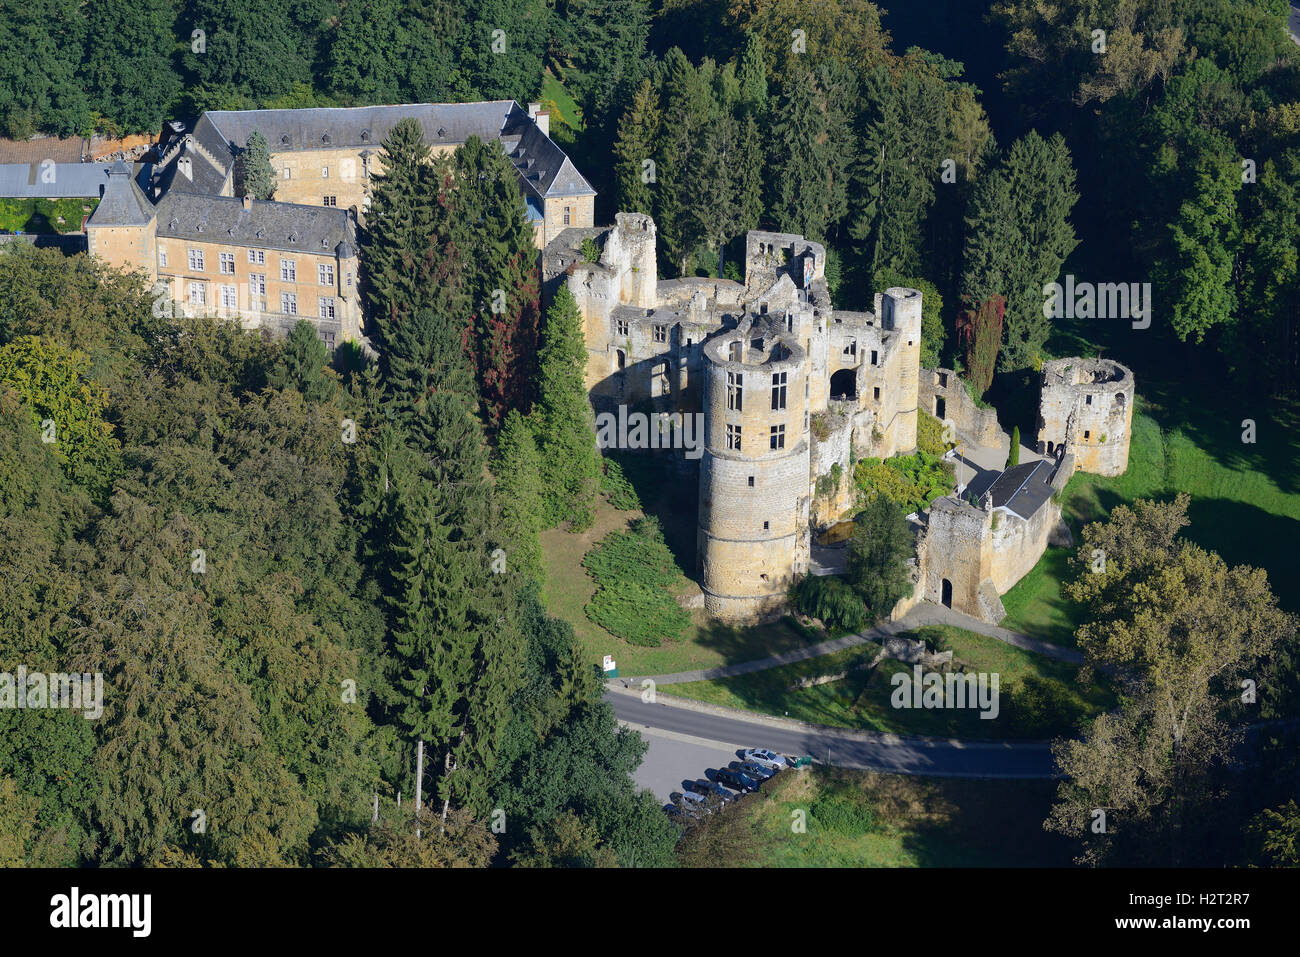 VISTA AEREA. Abbandonato castello medievale accanto ad un castello rinascimentale. Castelli di Beaufort, distretto di Grevenmacher, Lussemburgo. Foto Stock